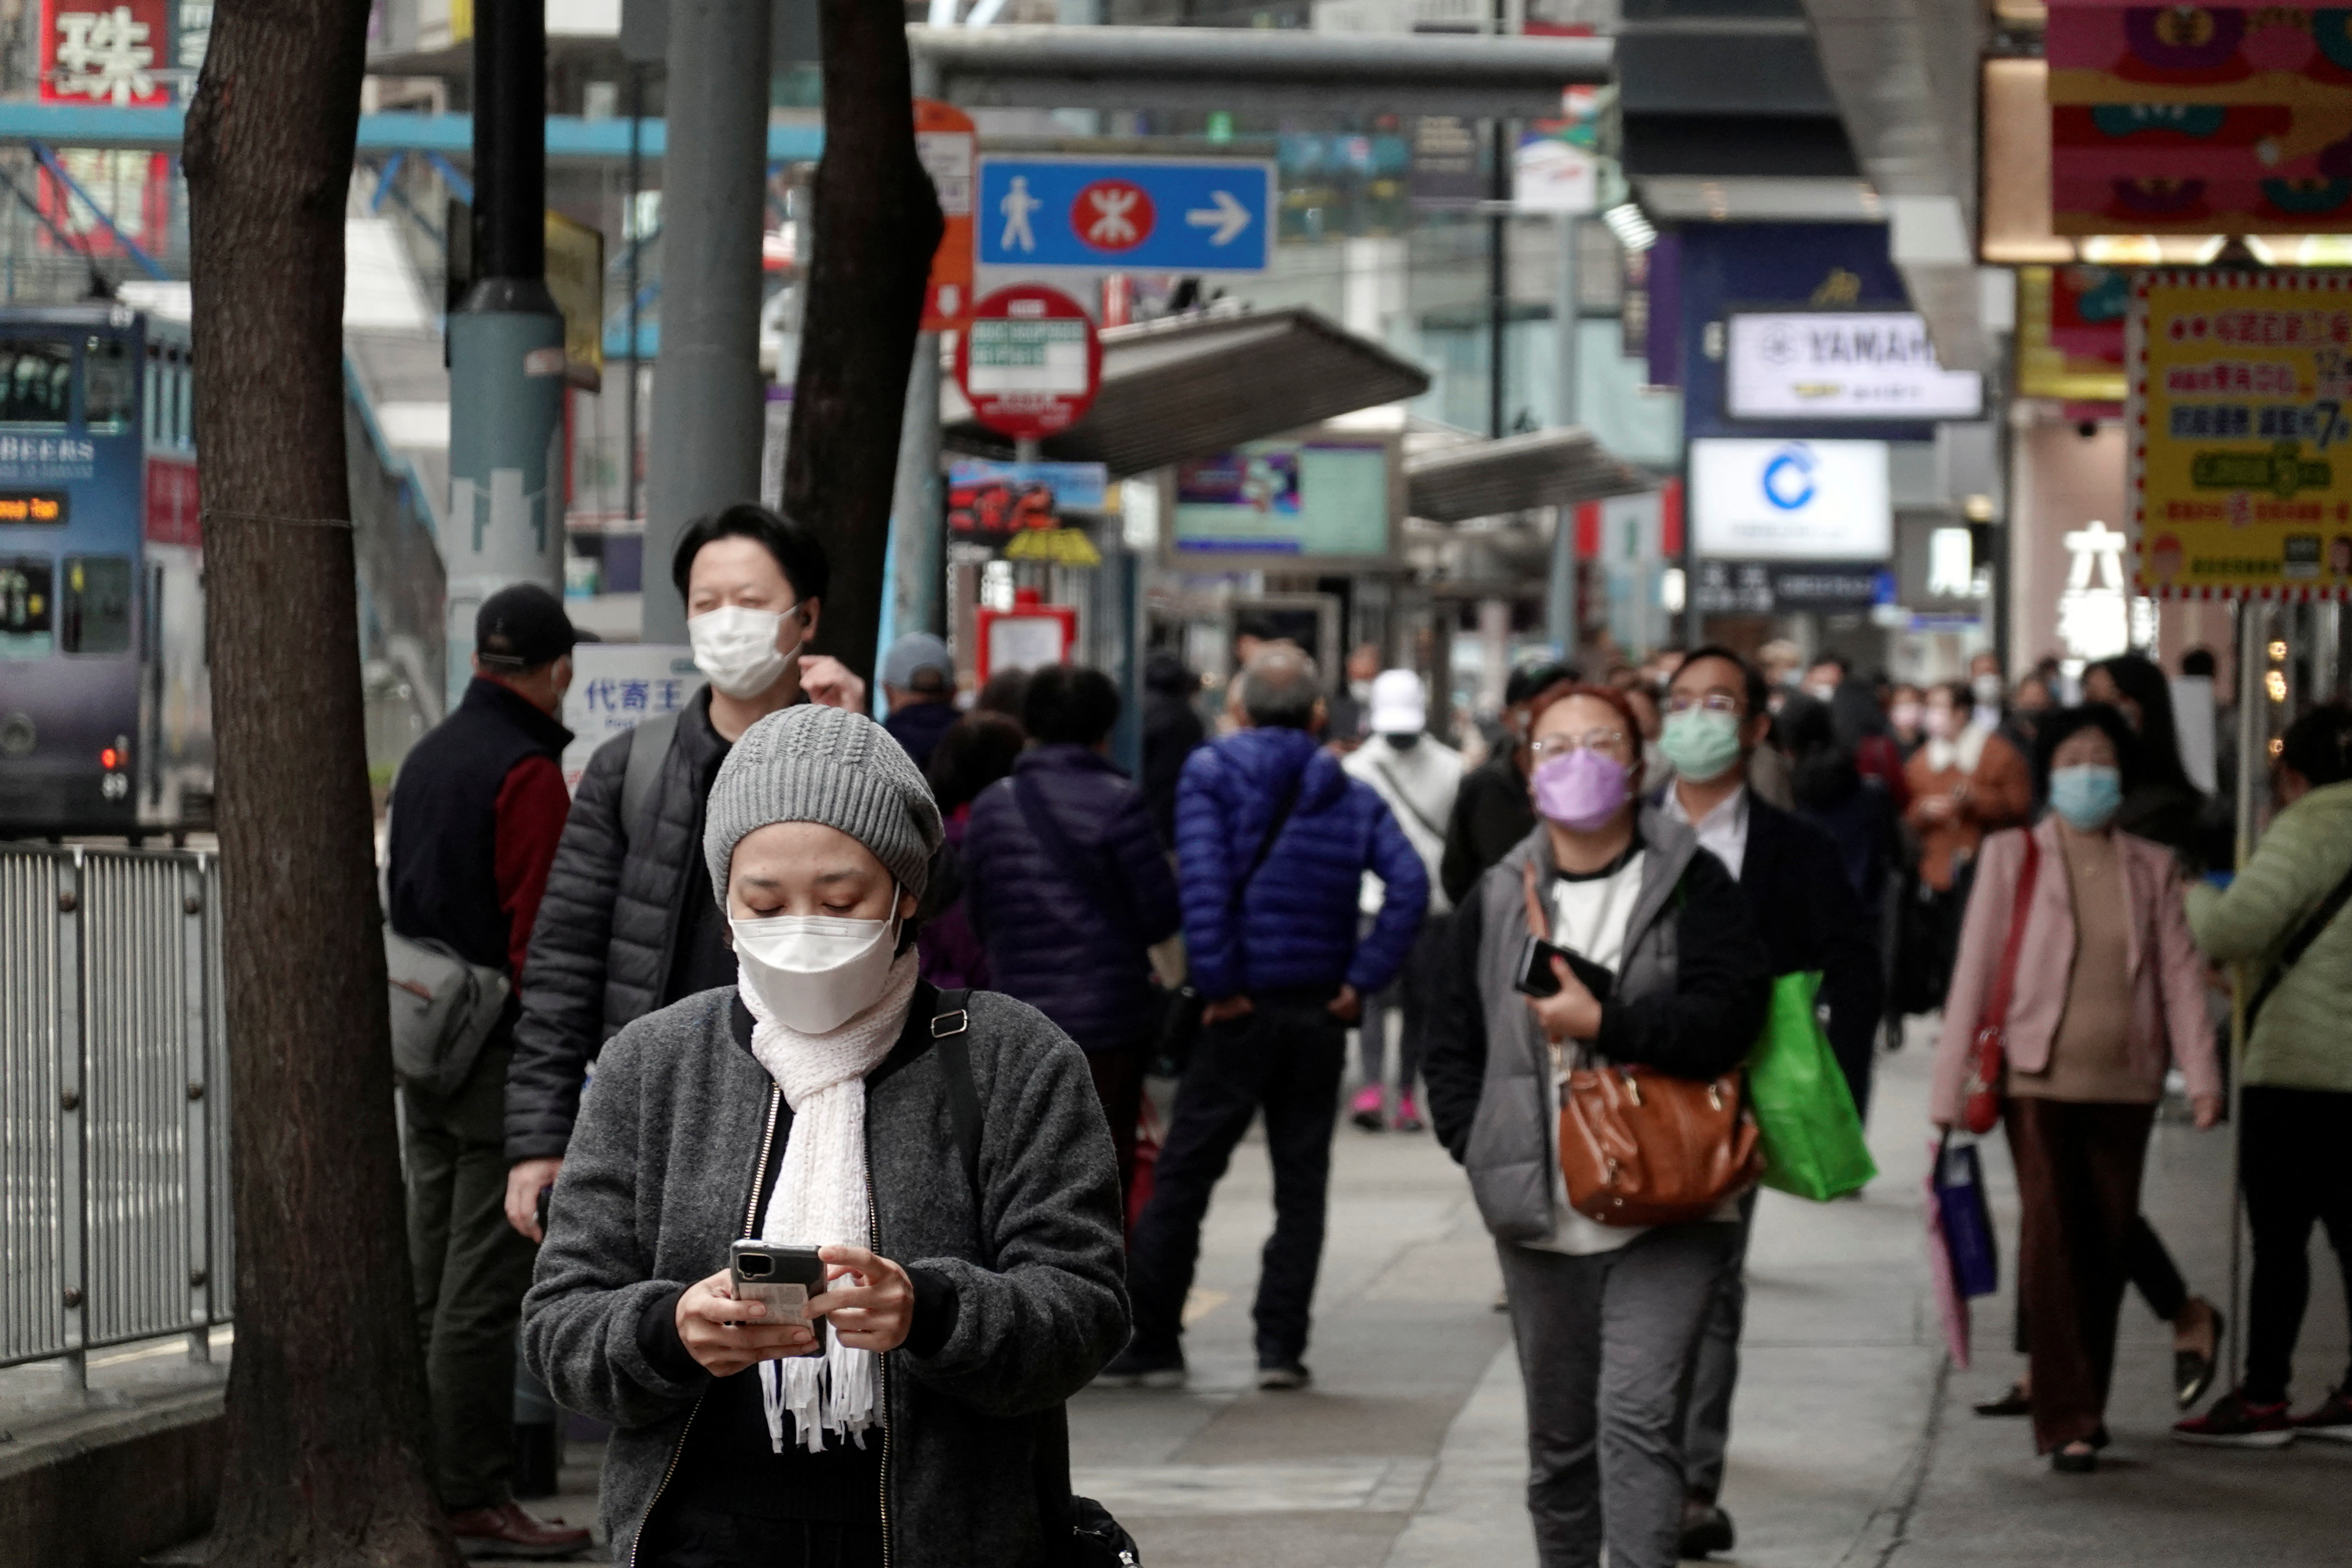 Pedestrians wearing face masks walk on a street in Hong Kong